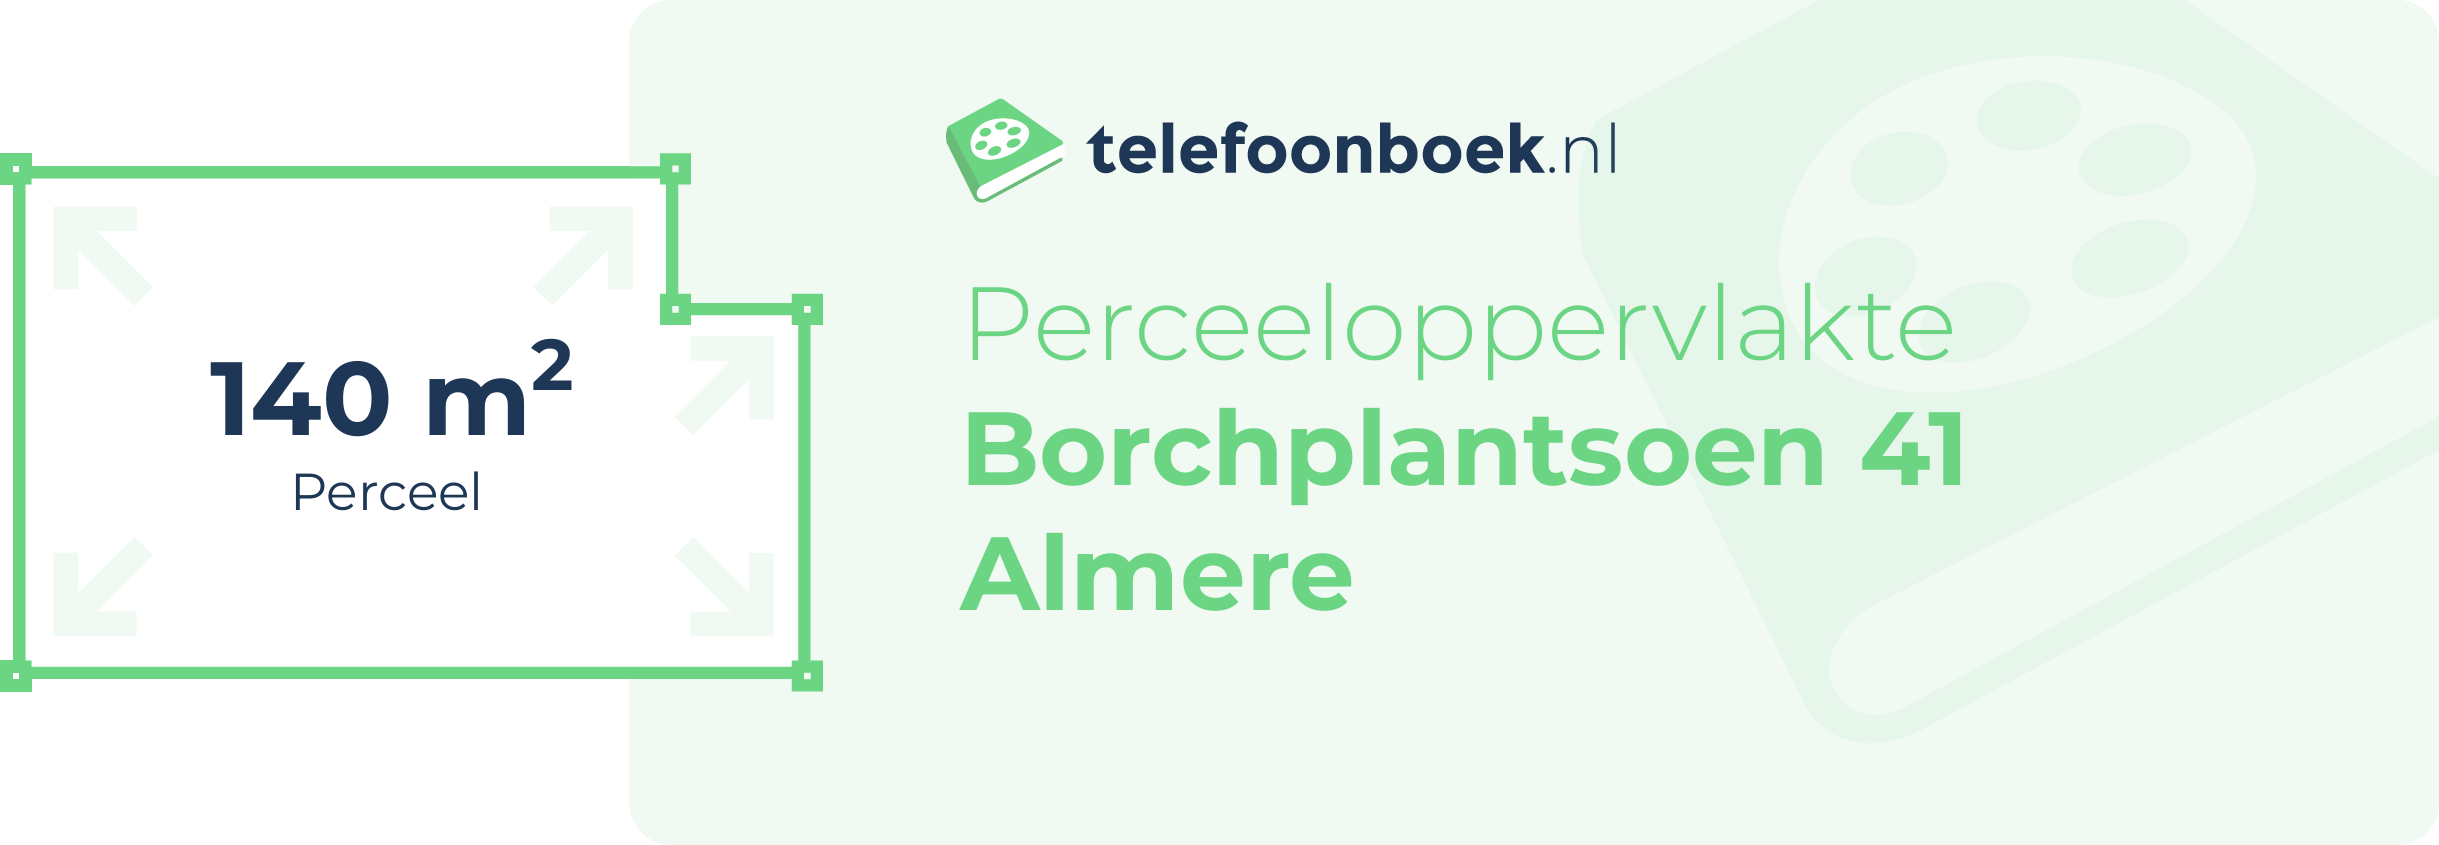 Perceeloppervlakte Borchplantsoen 41 Almere